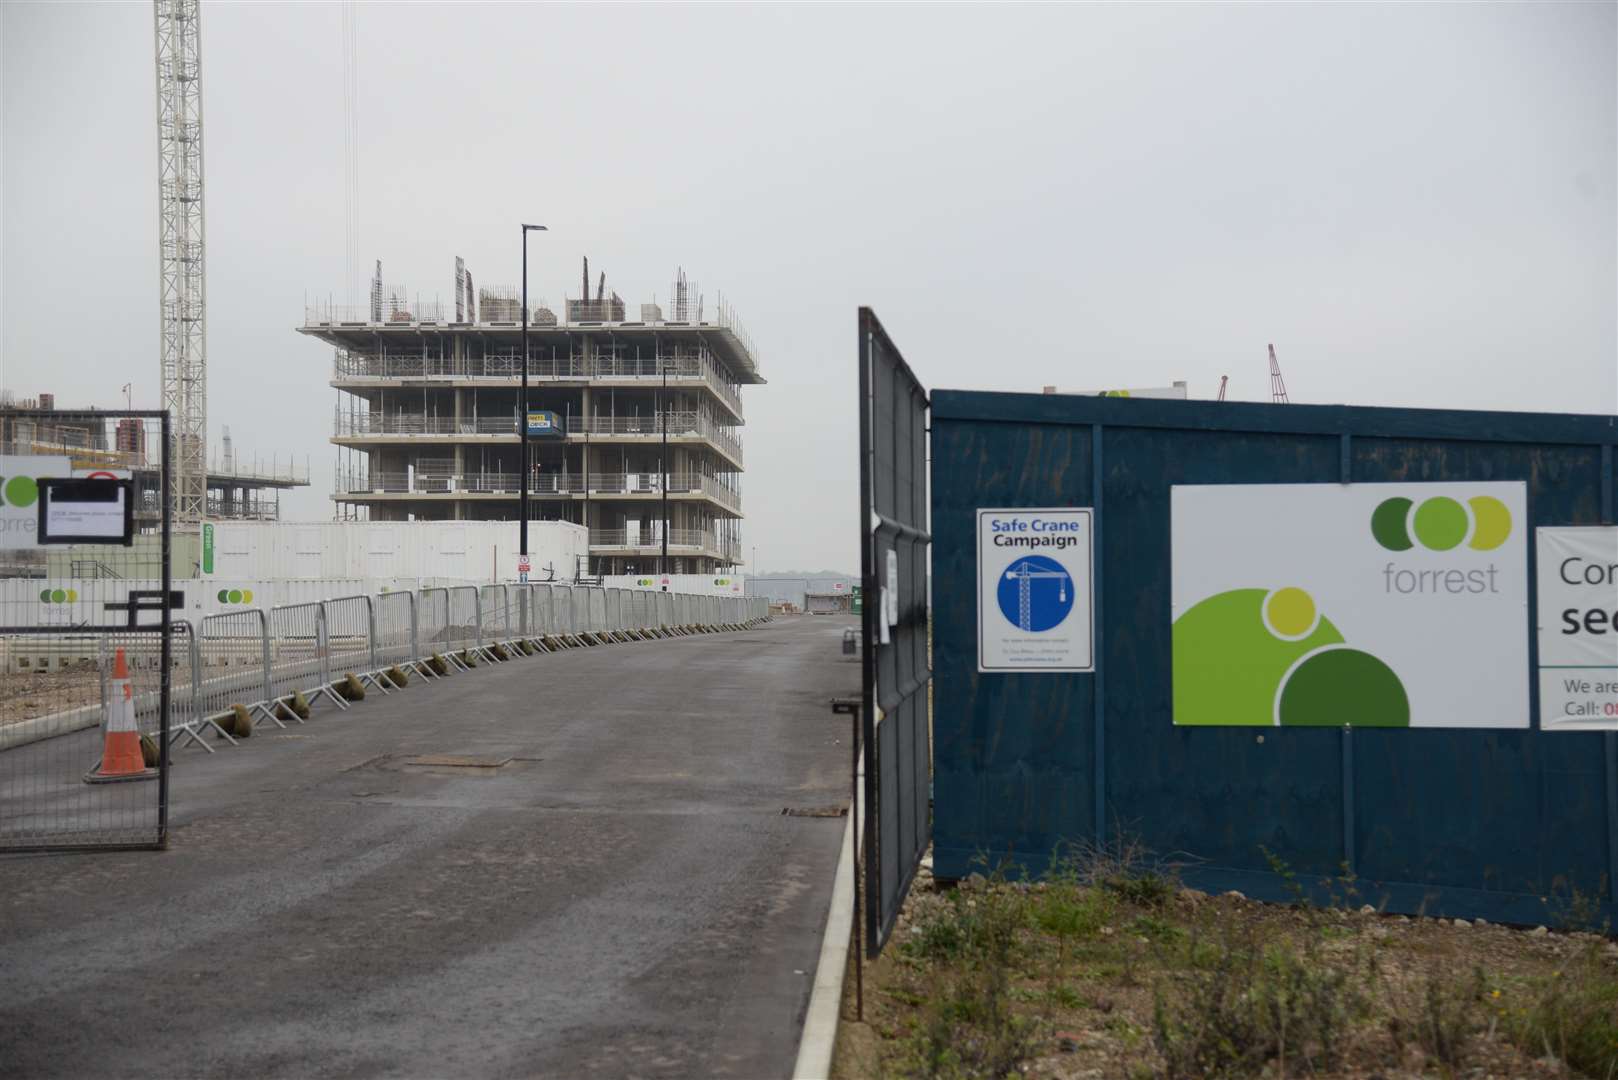 Construction began in 2018